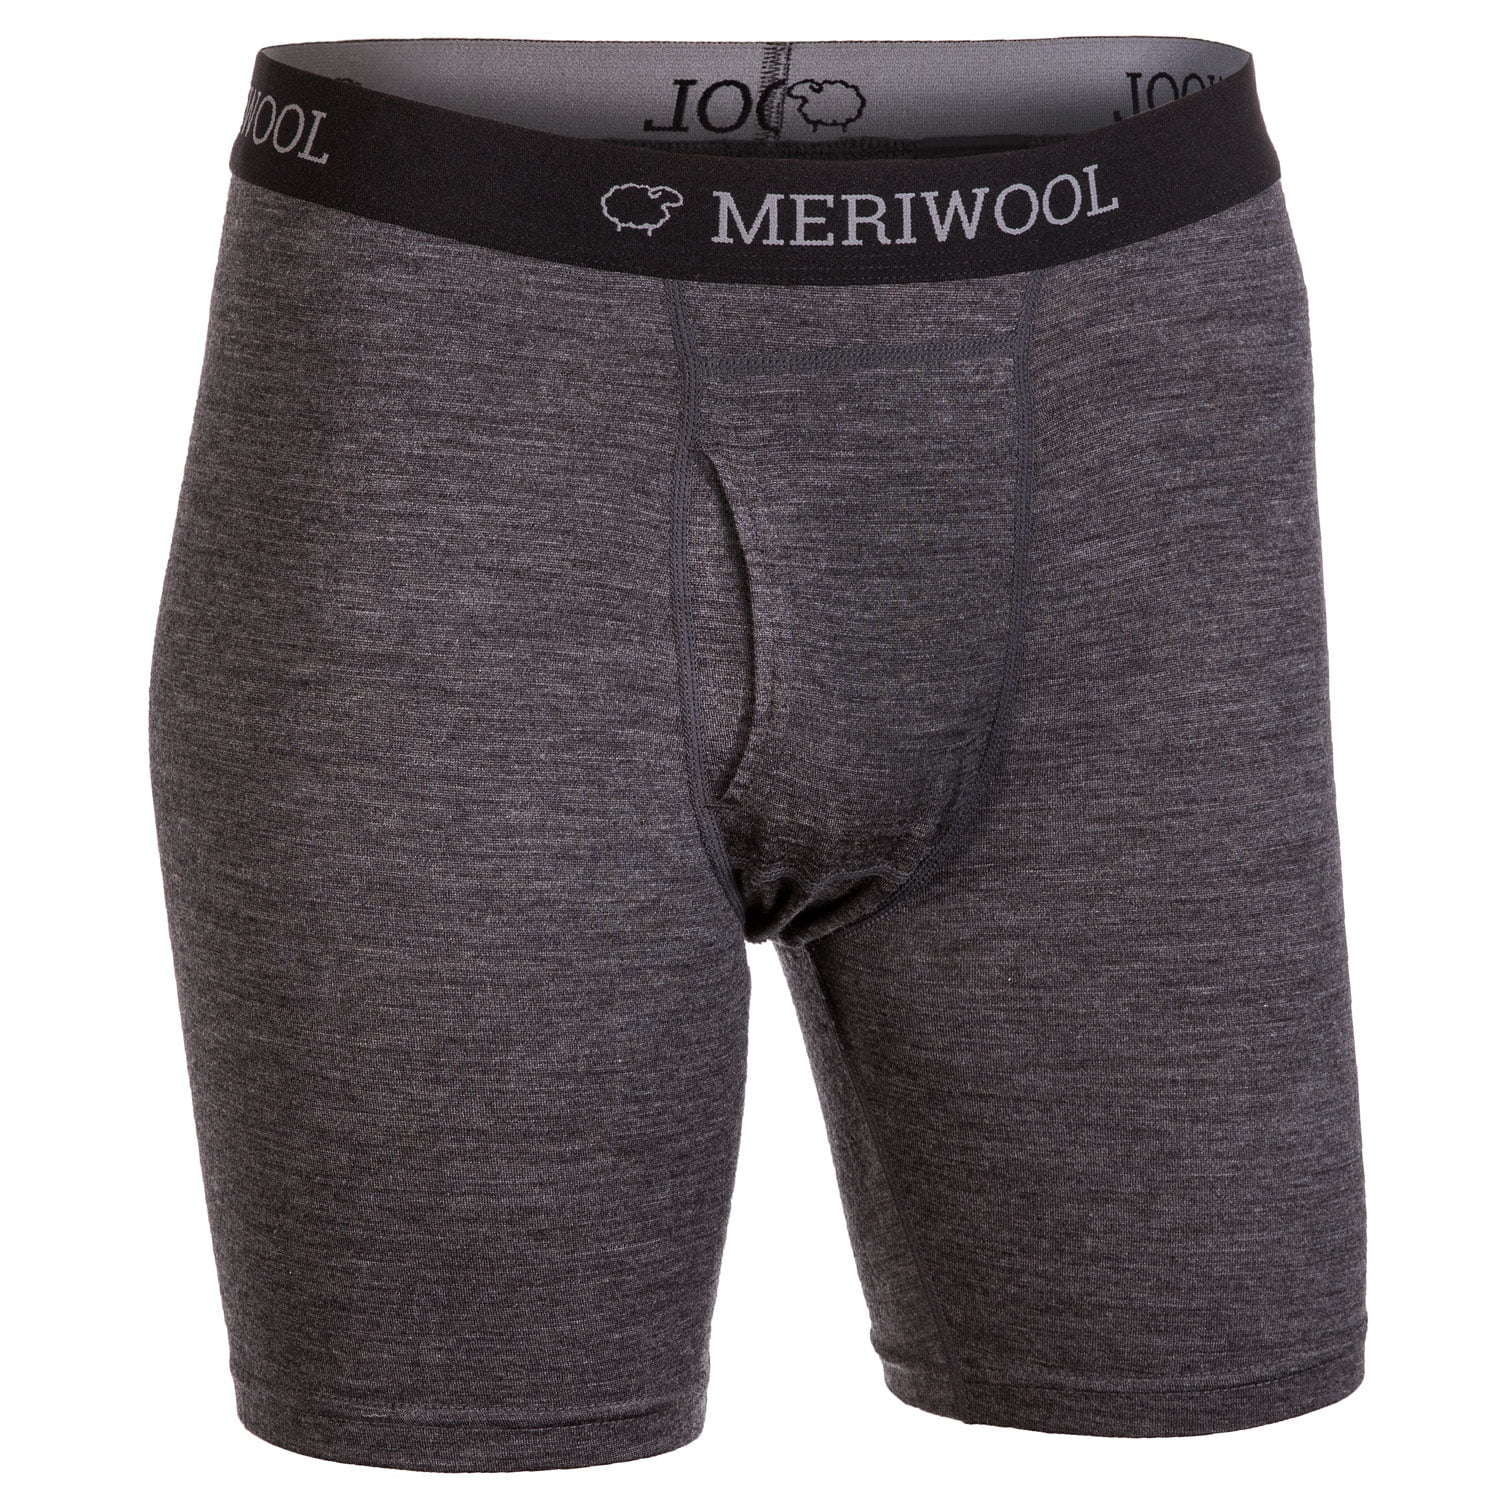 Merino Wool Underwear & Boxer Briefs For Men